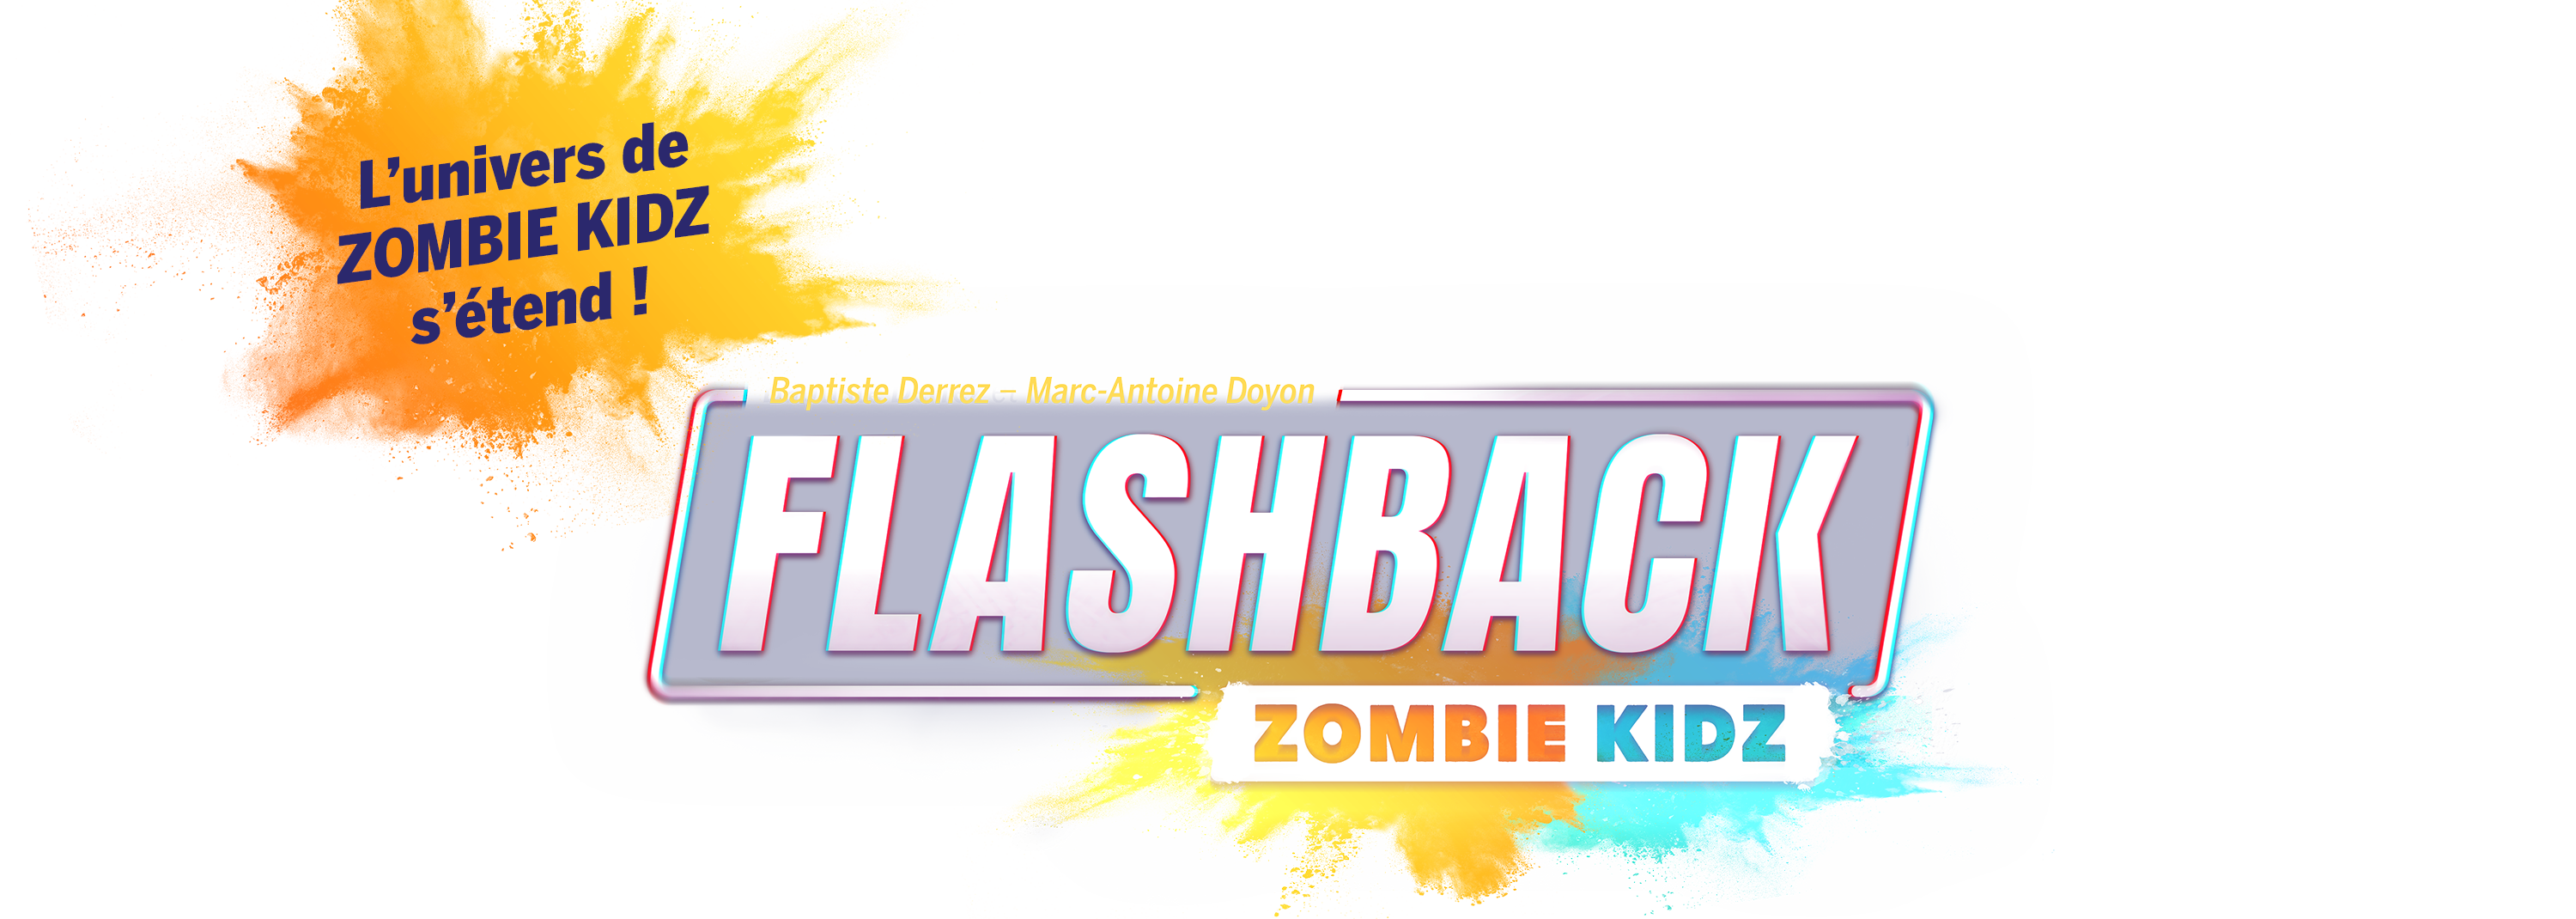 logo FlashBack Zombie kidz